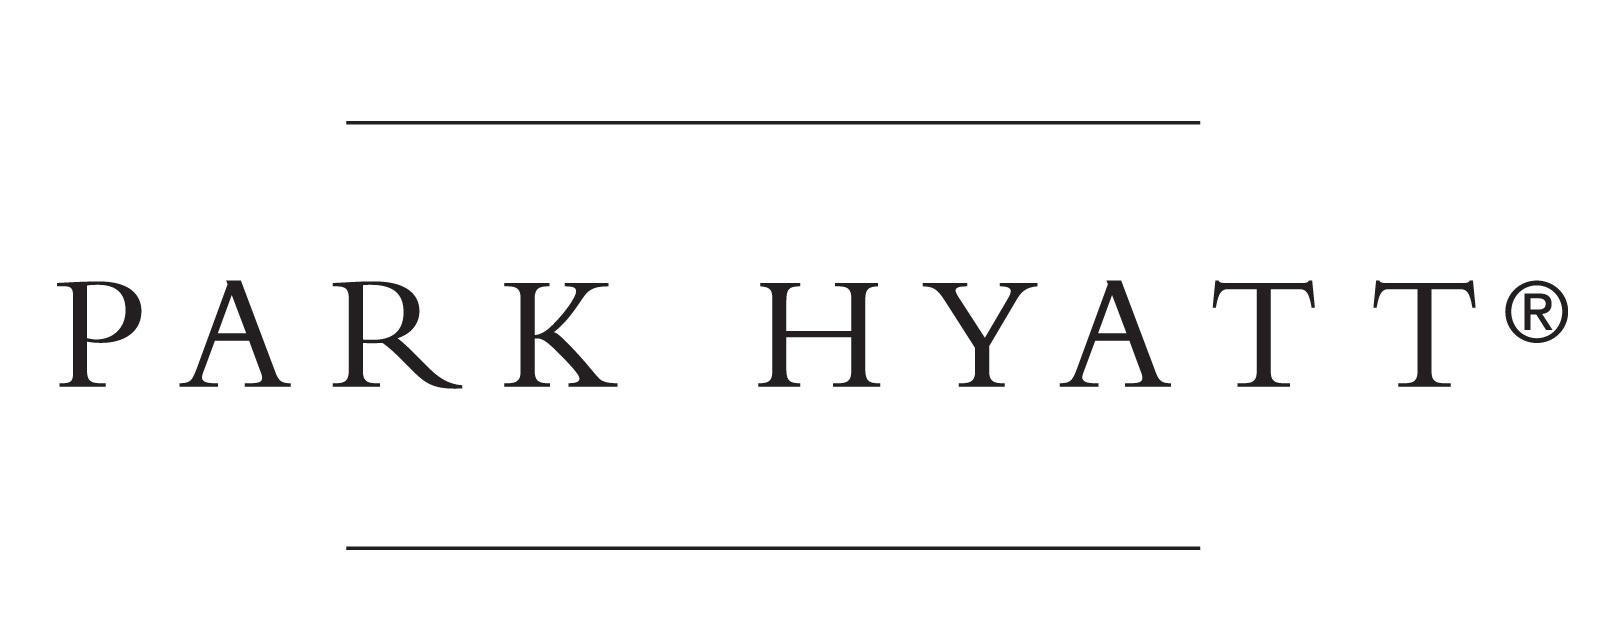 파일:Park_hyatt_logo.jpg